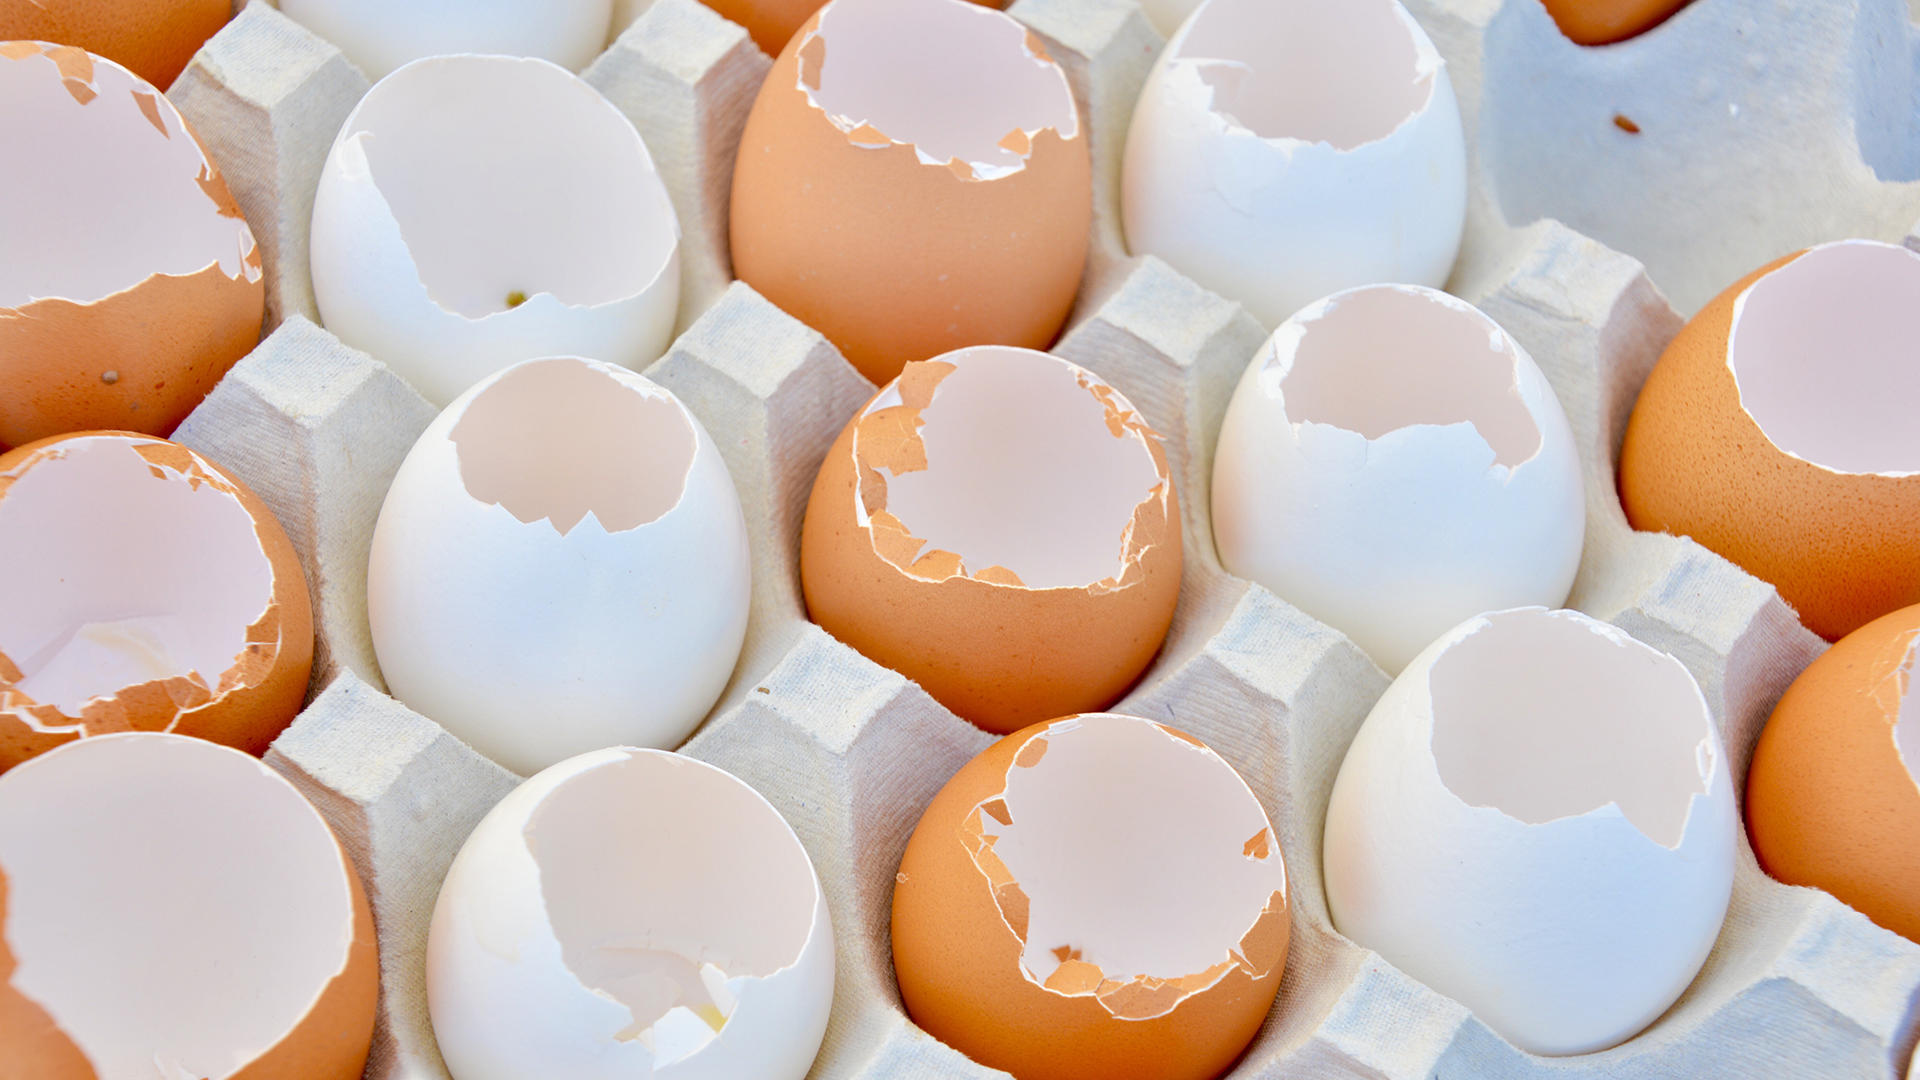 Sabies que les closques d'ou tenen més de 10 usos diferents? Te'ls expliquem